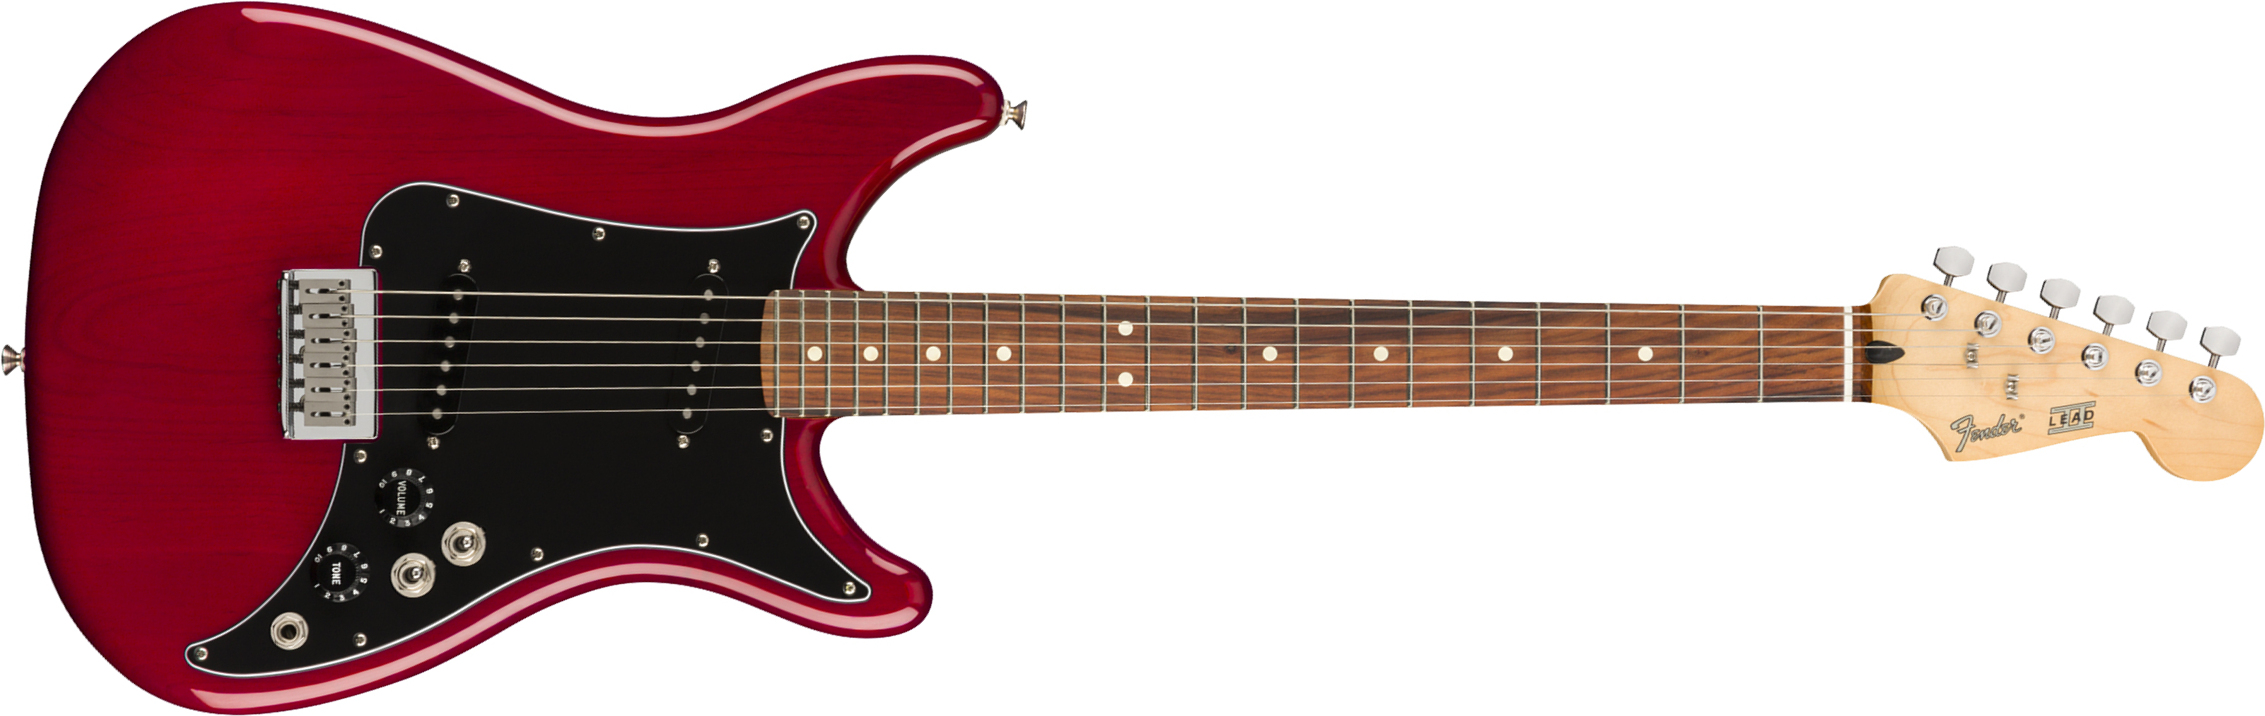 Fender Lead Ii Player Mex Ss Ht Pf - Crimson Red Transparent - Guitare Électrique Forme Str - Main picture